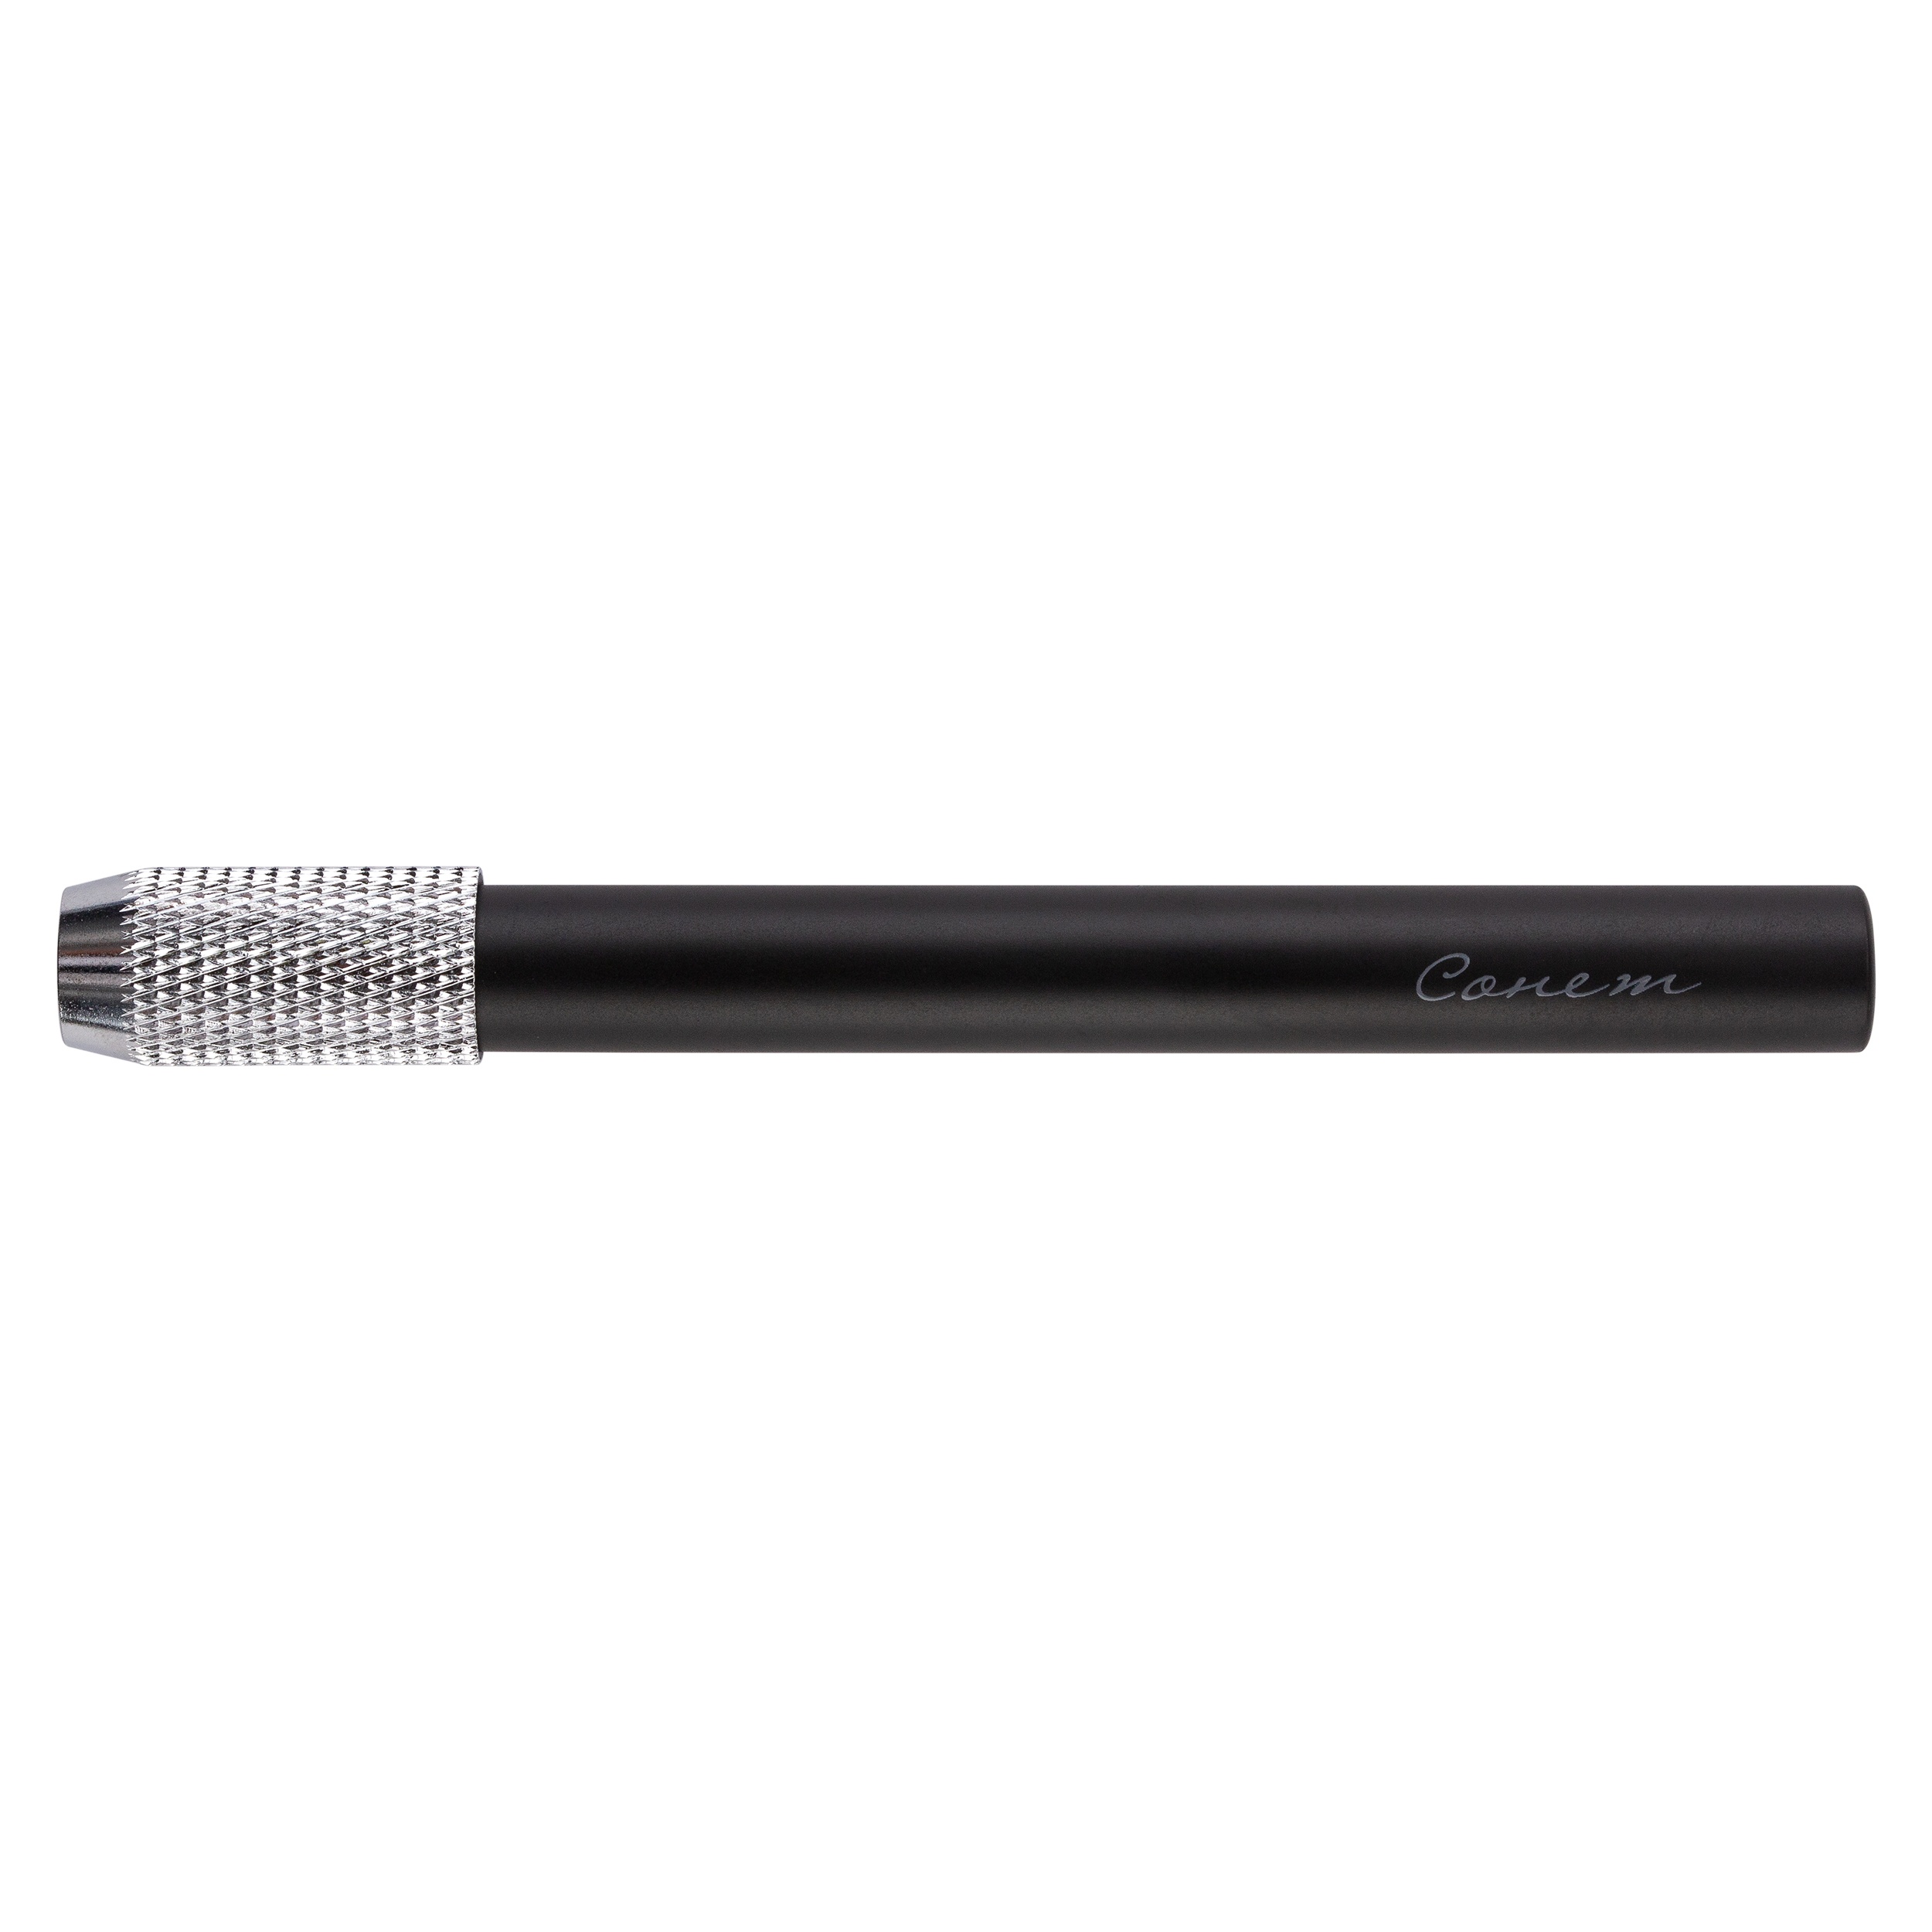 Удлинитель для карандаша СОНЕТ d:7-7,8мм металл черный по 116.00 руб от Сонет